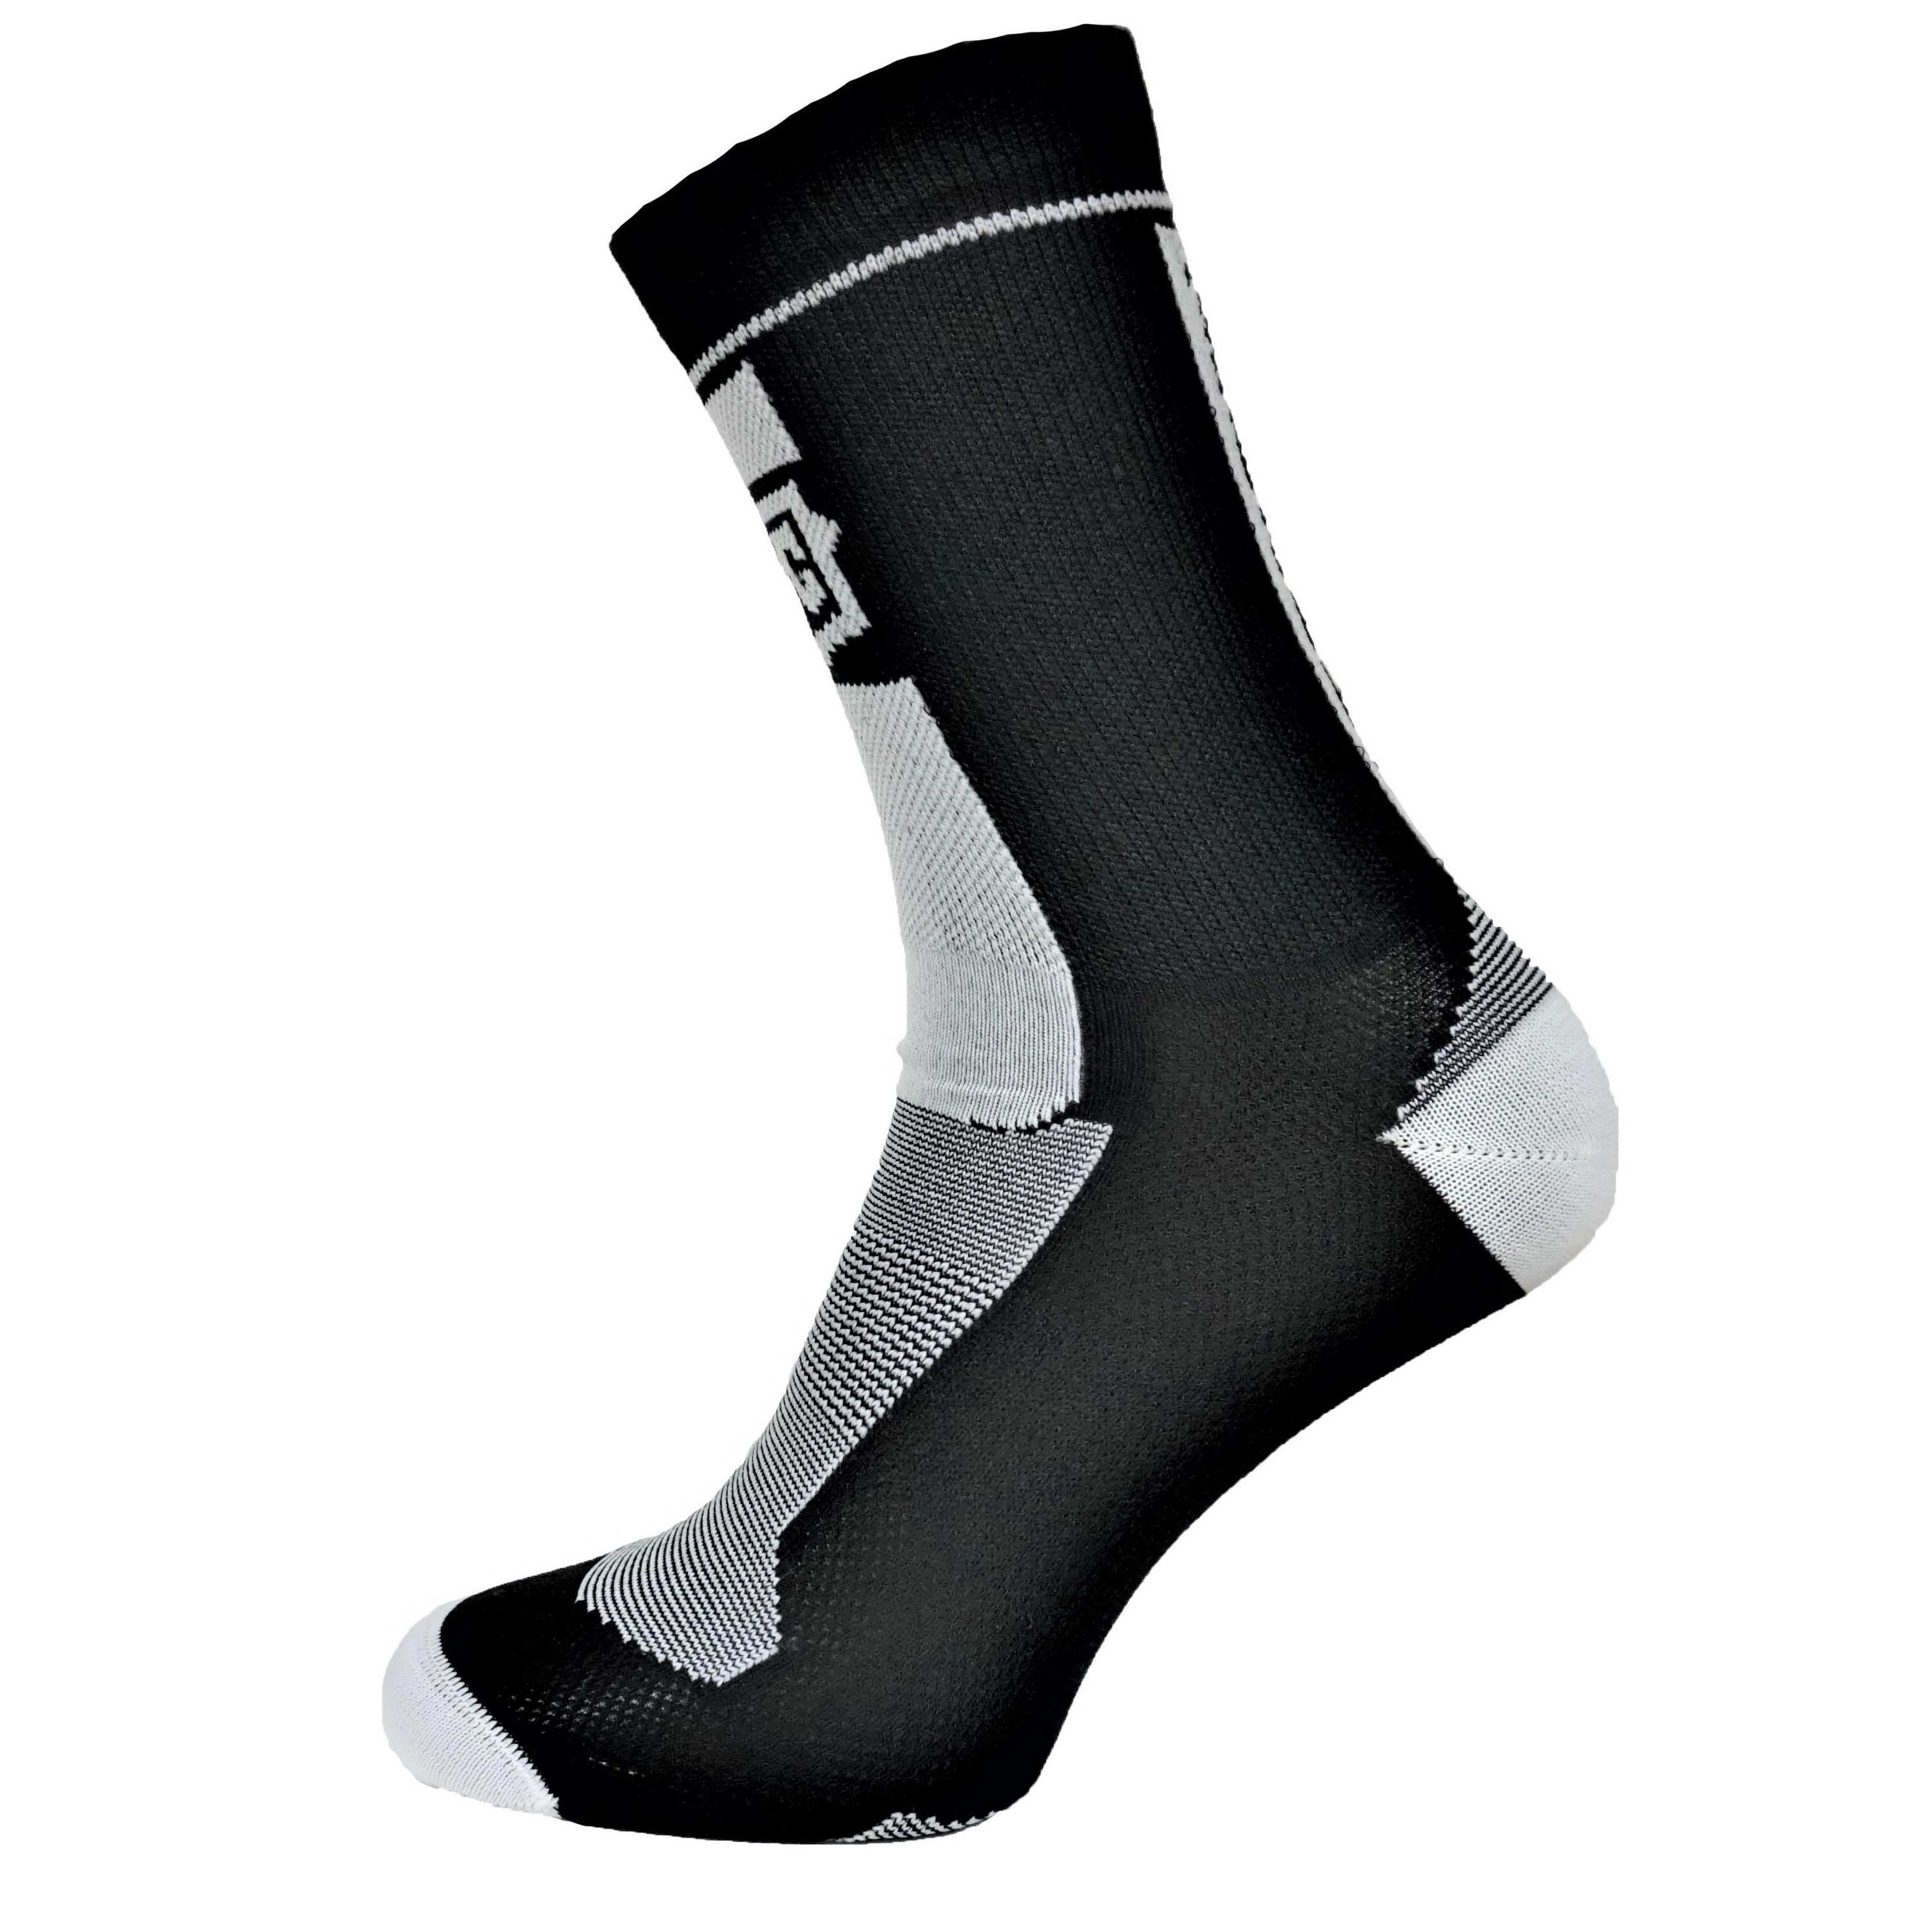 Ponožky MelCon silver antibakteriální černo bílé Velikost: 39 - 42 EU